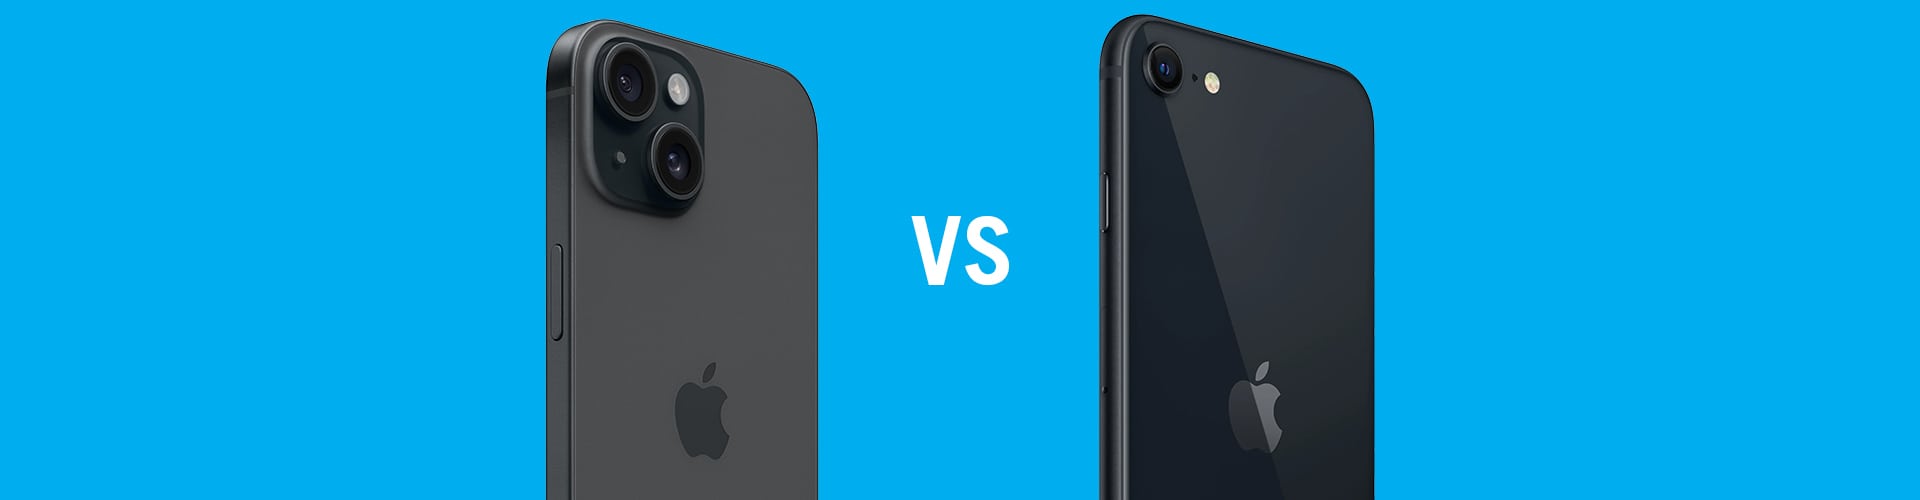 iphone 15 vs iphone se camera vergelijking